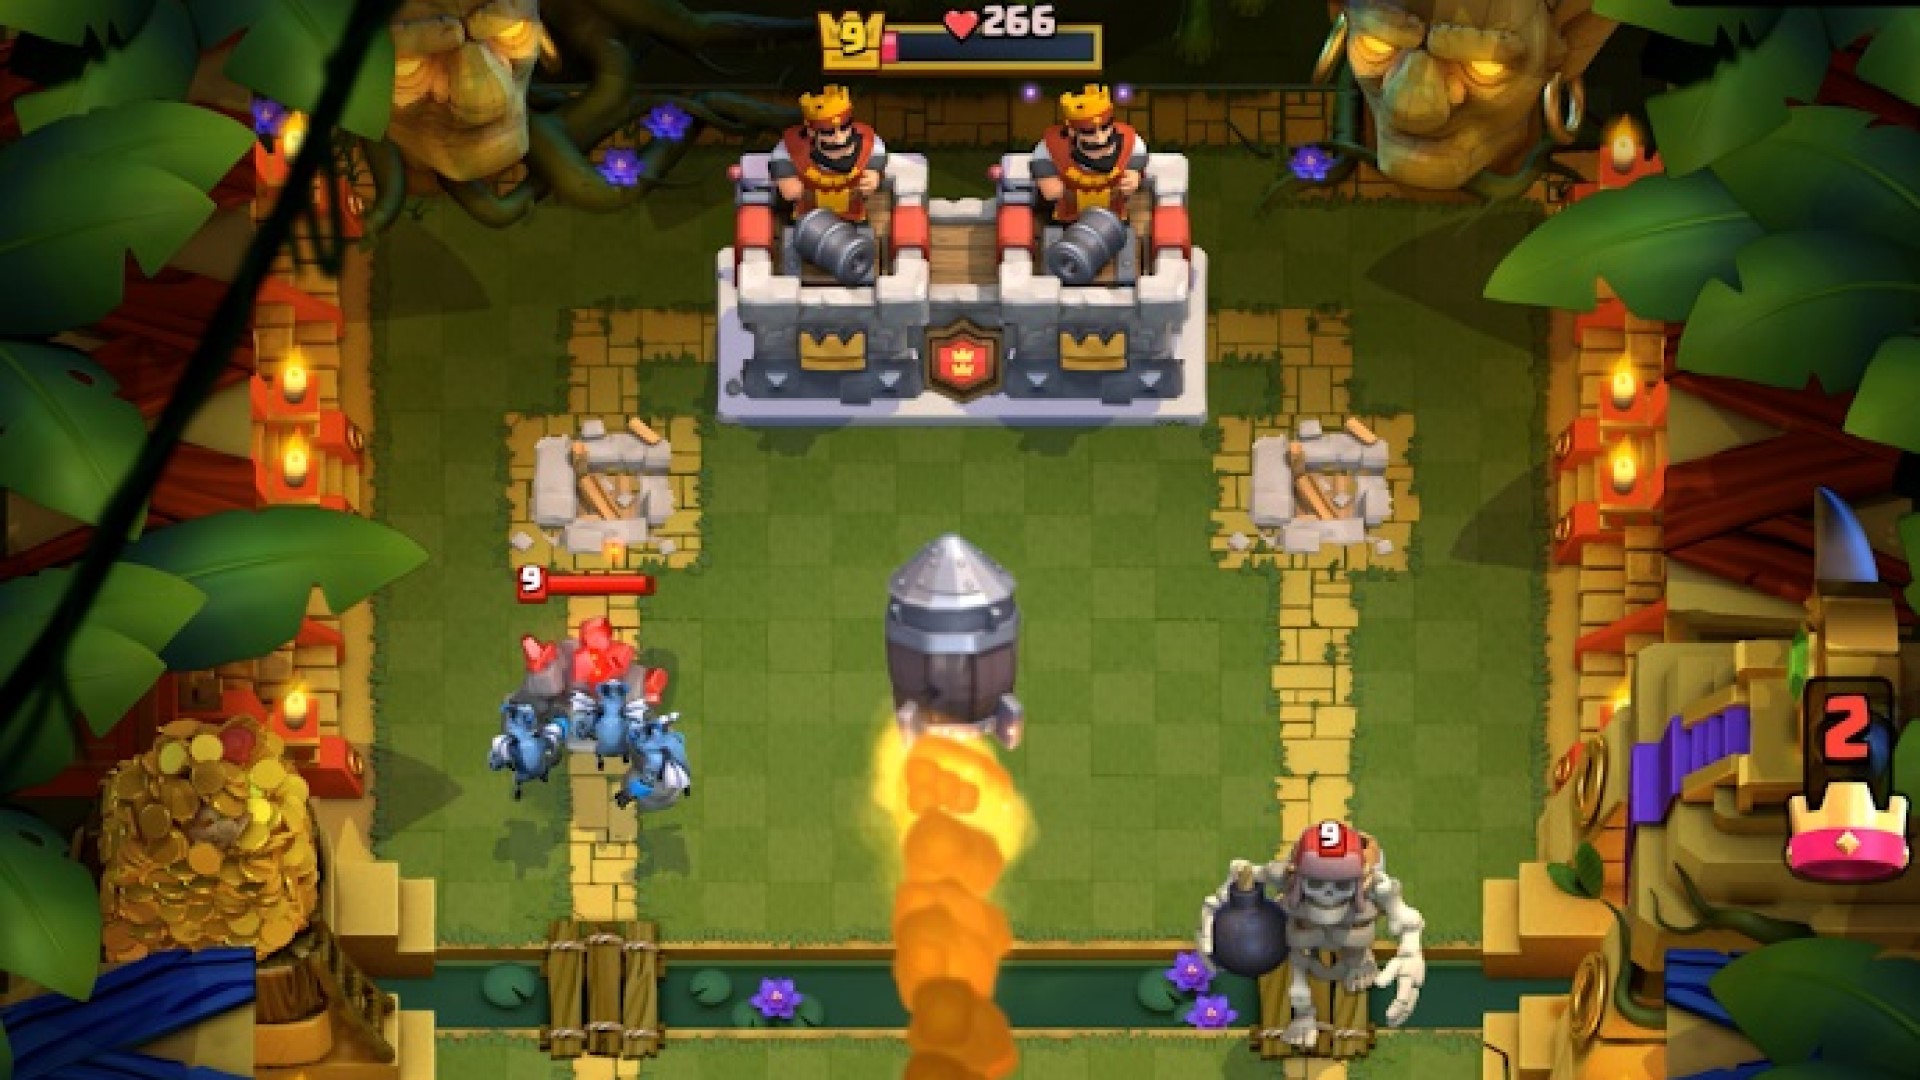 Los mejores juegos de estrategia móvil: Clash Royale. La imagen muestra dos reyes apuntando a cañones a un esqueleto gigante en un entorno similar a la jungla